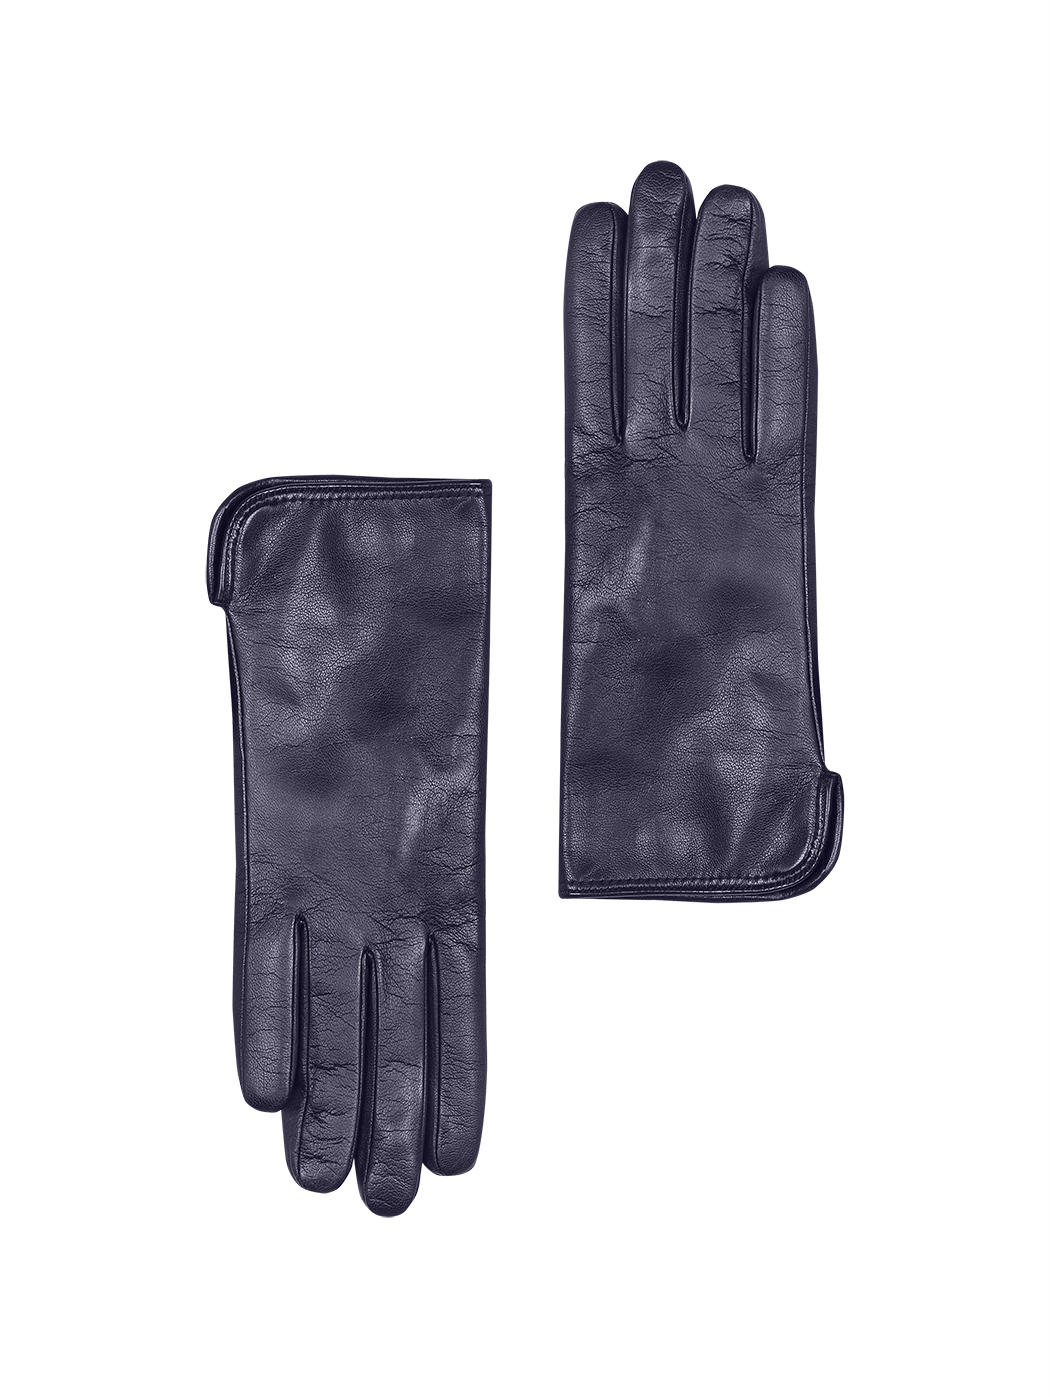 Женские кожаные перчатки с кашемировым подкладом темно - синего цвета